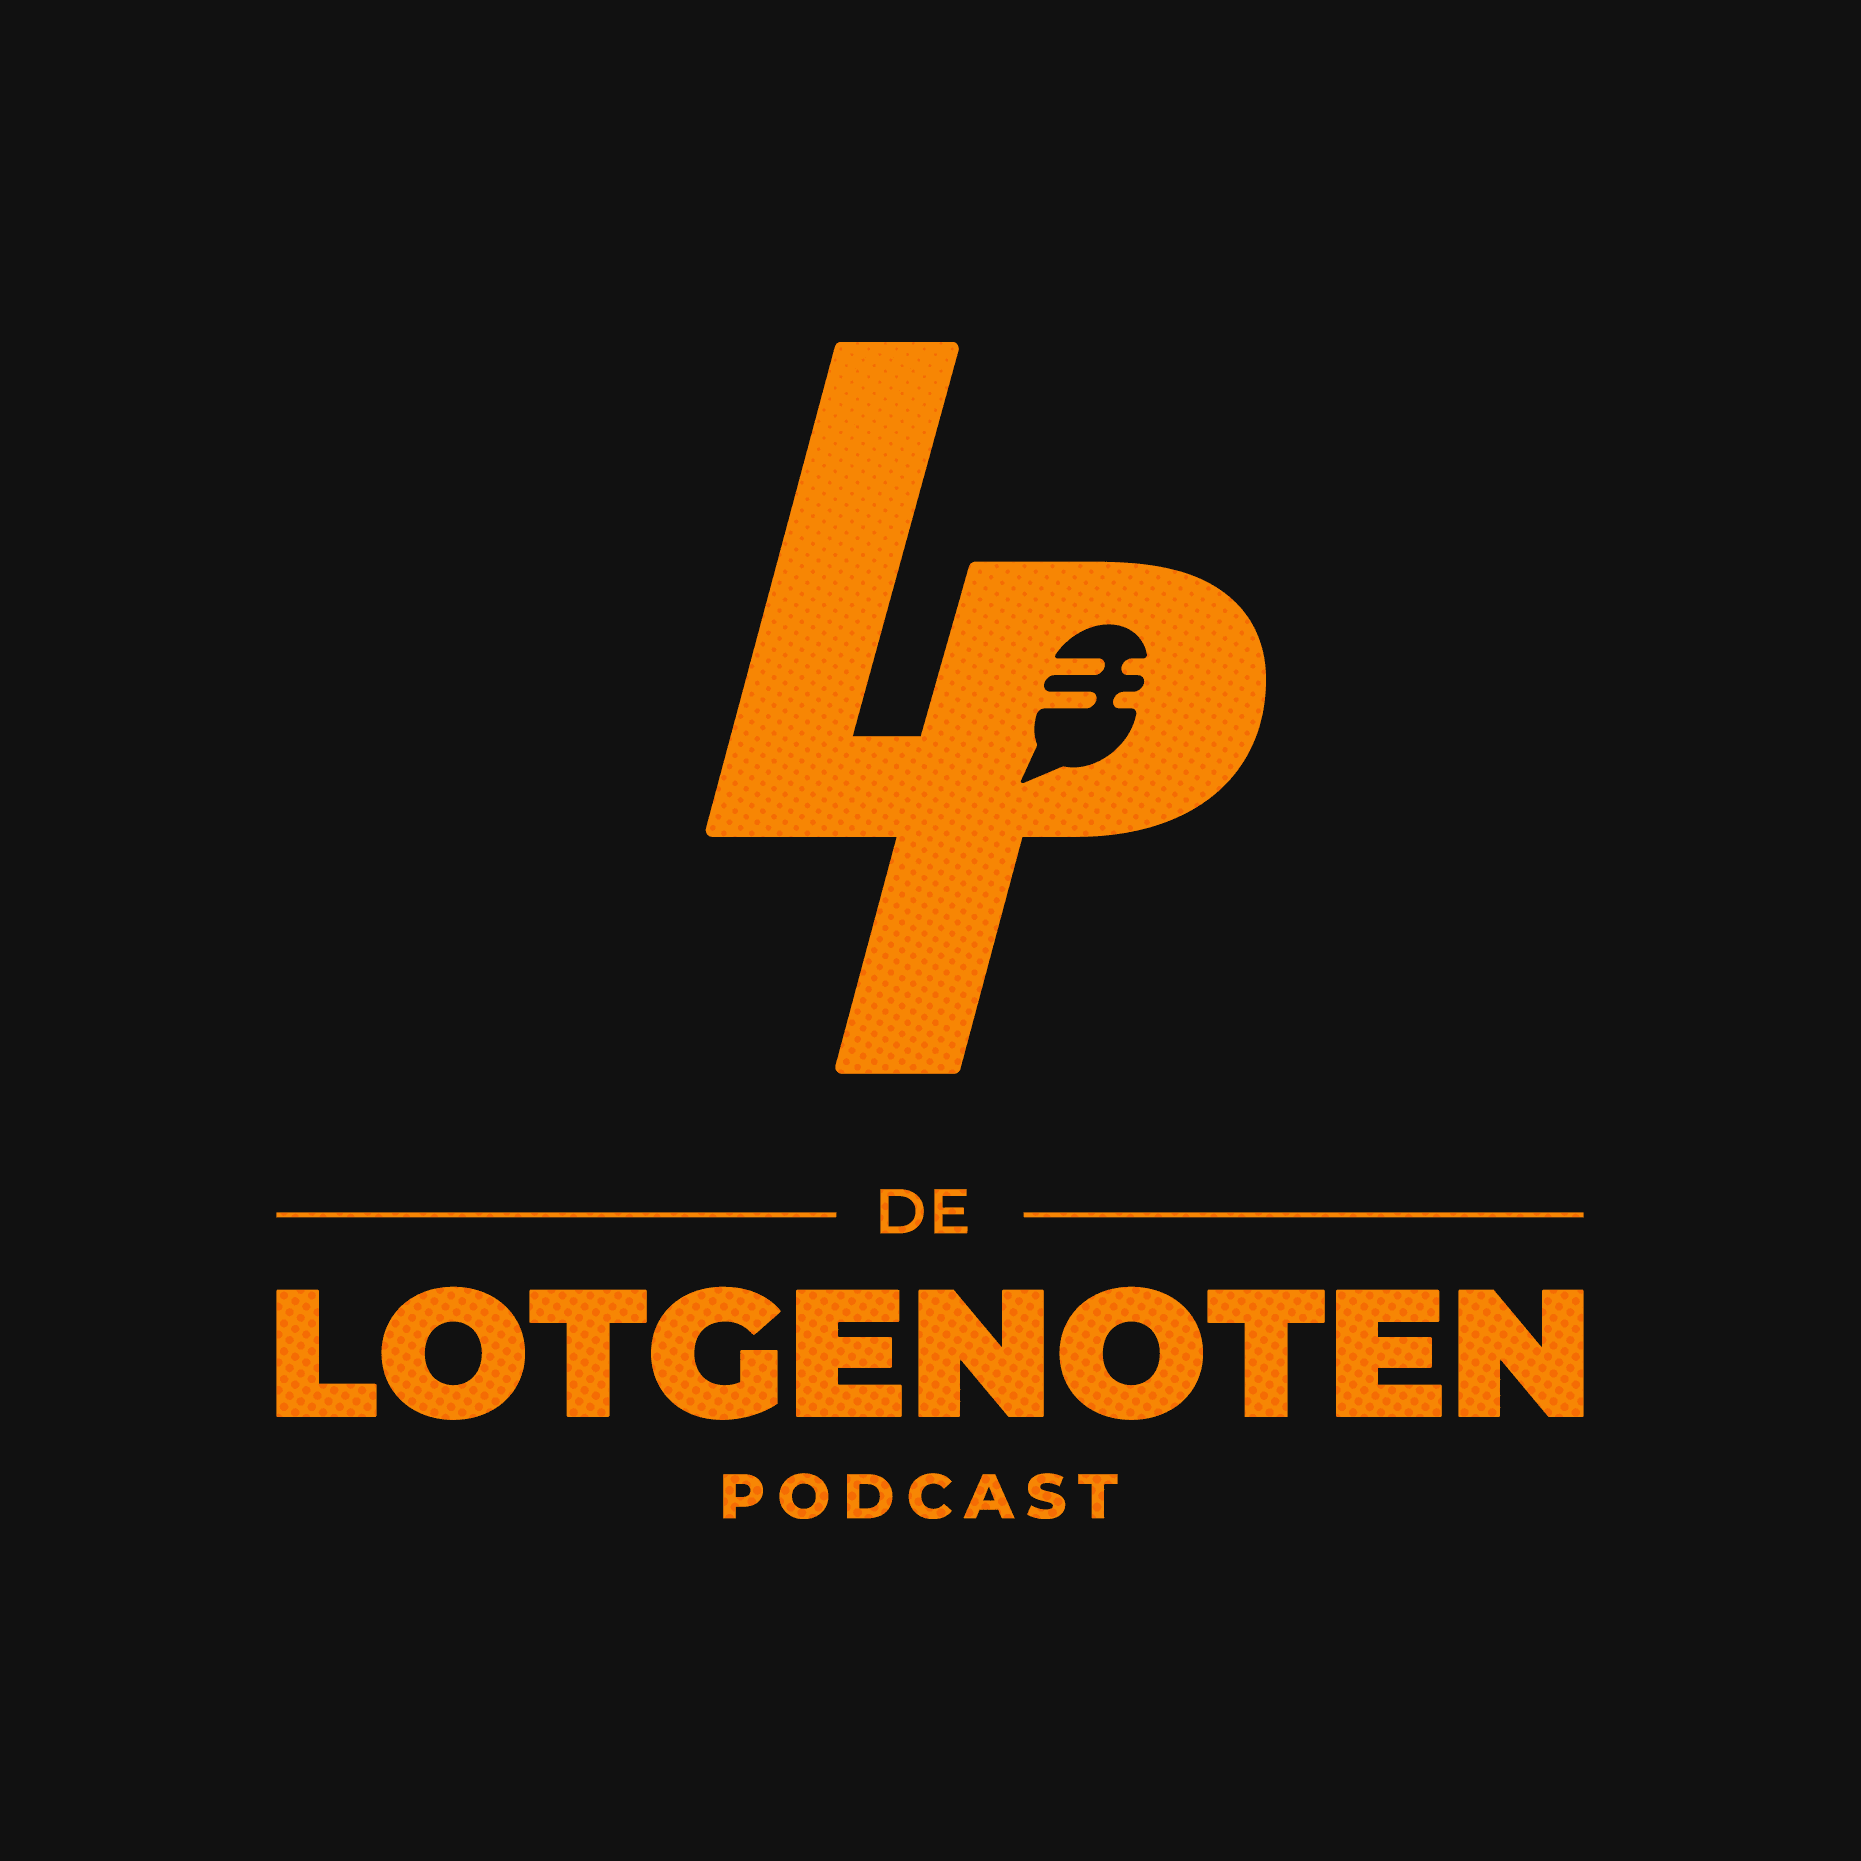 Artwork for podcast Lotgenoten Podcast